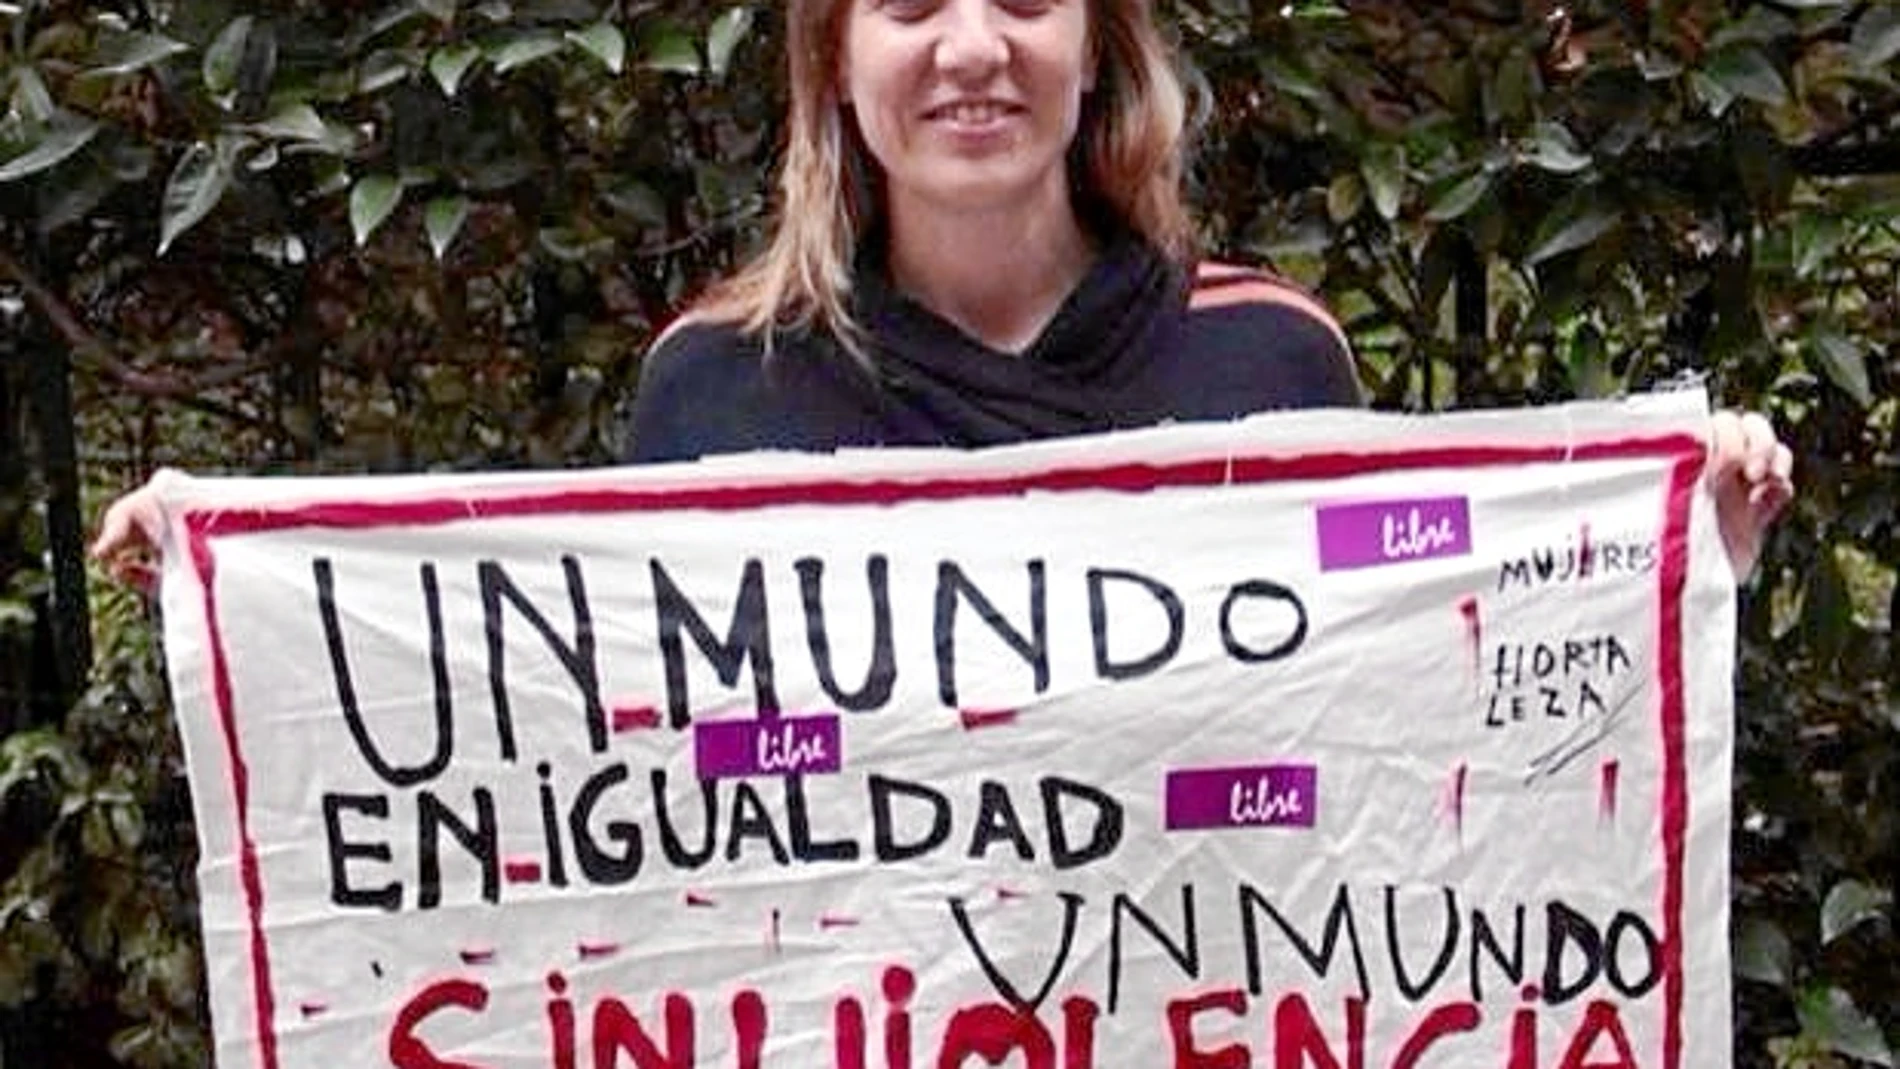 La diputada de IU, Tania Sánchez, ayer en una campaña contra la violencia de género